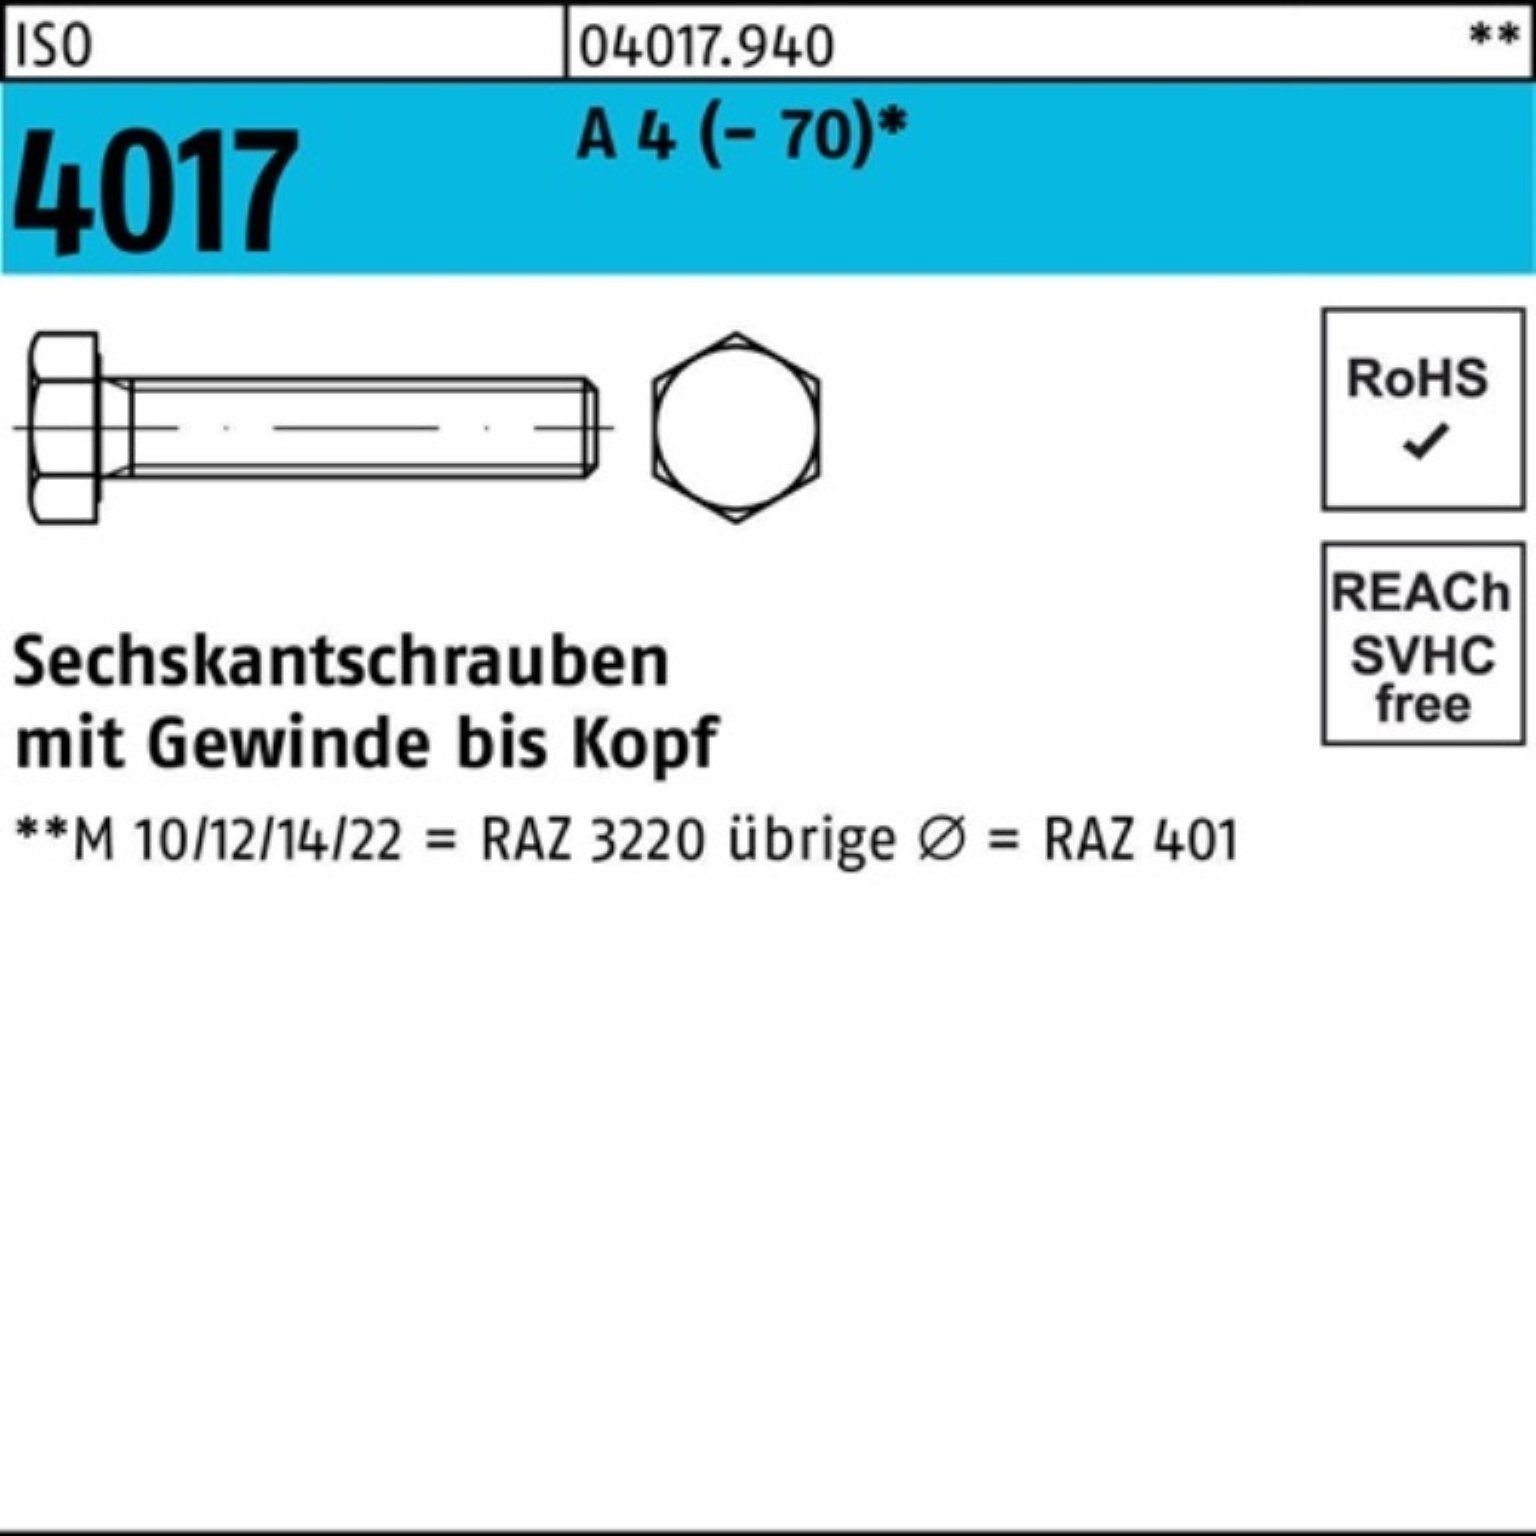 Bufab Sechskantschraube 500er Pack Sechskantschraube ISO 4017 VG M5x 10 A 4 (70) 500 Stück